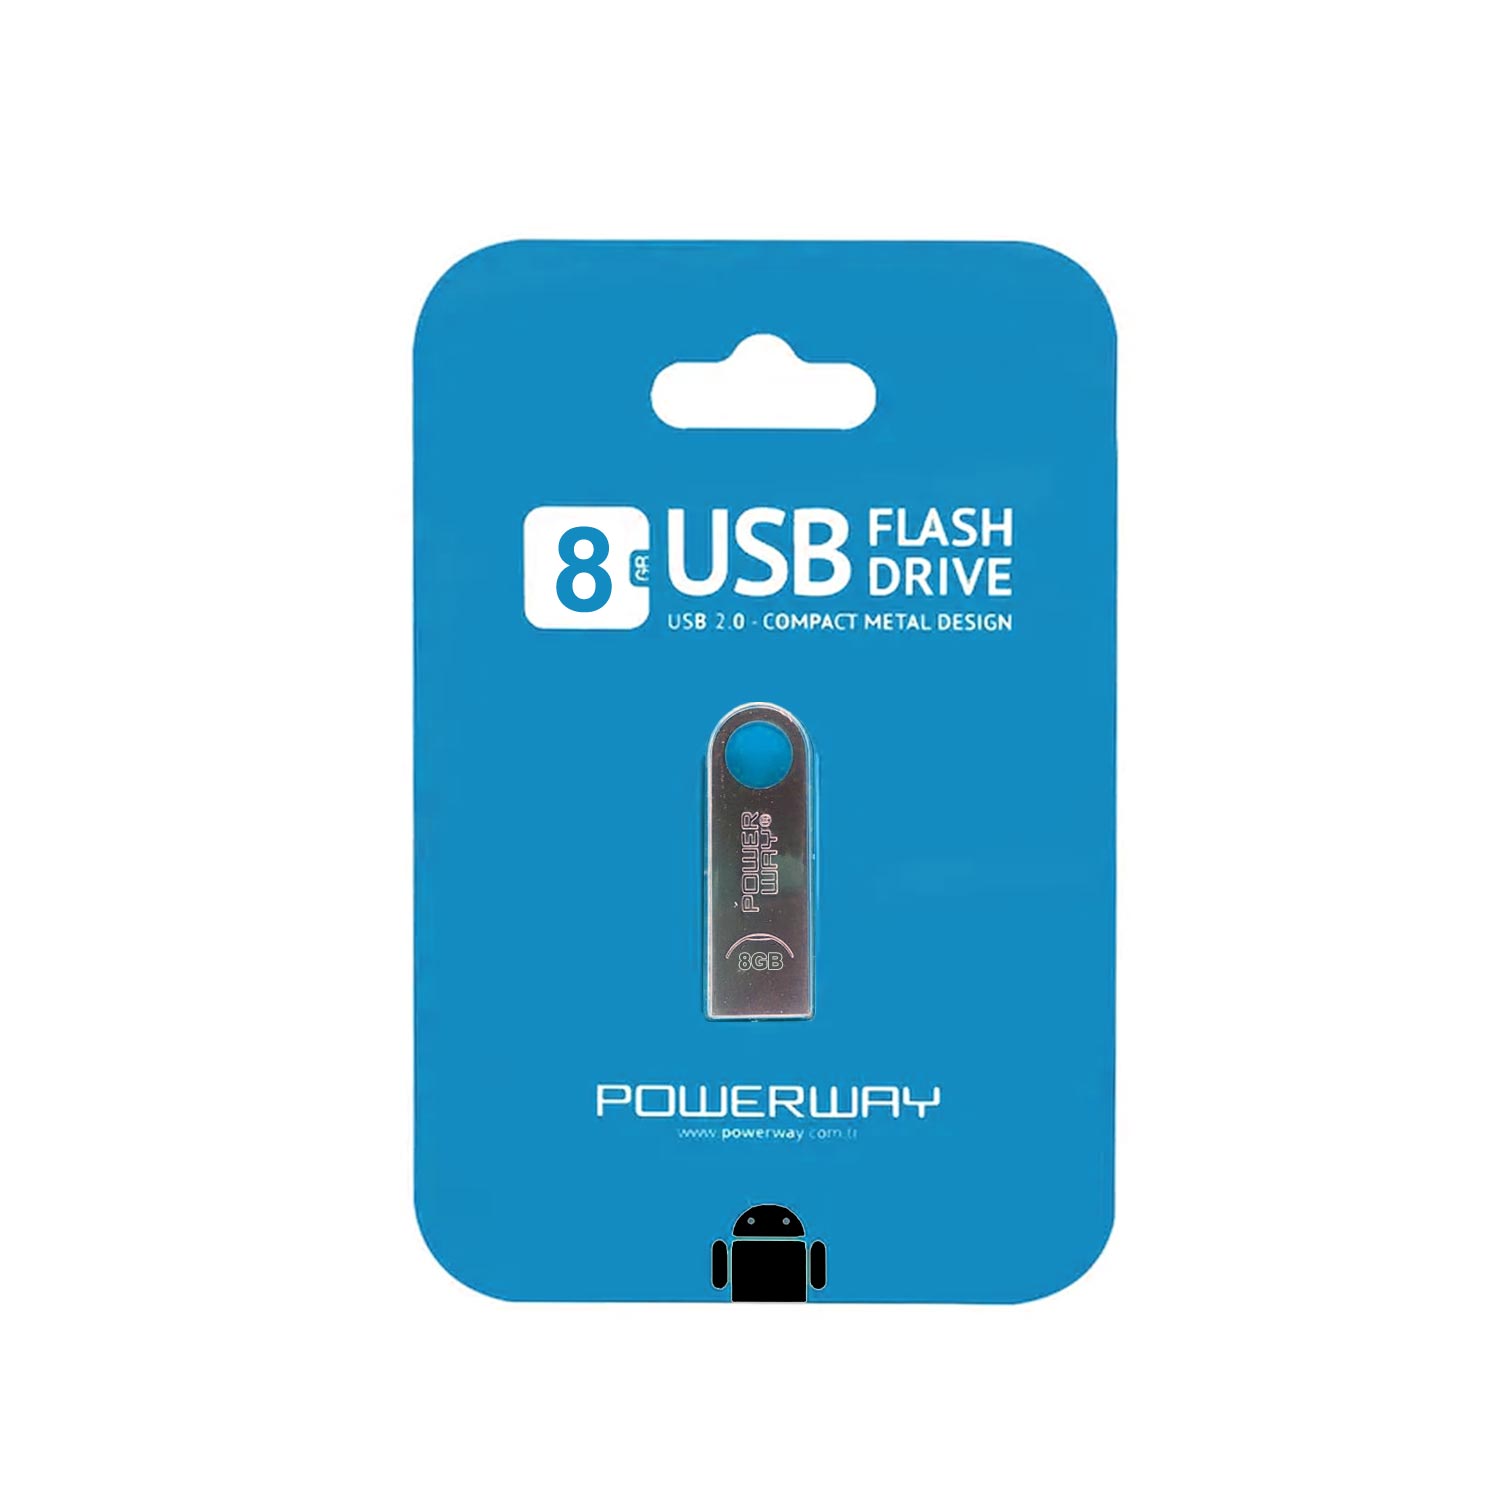 USB FLASH BELLEK 8GB METAL POWERWAY